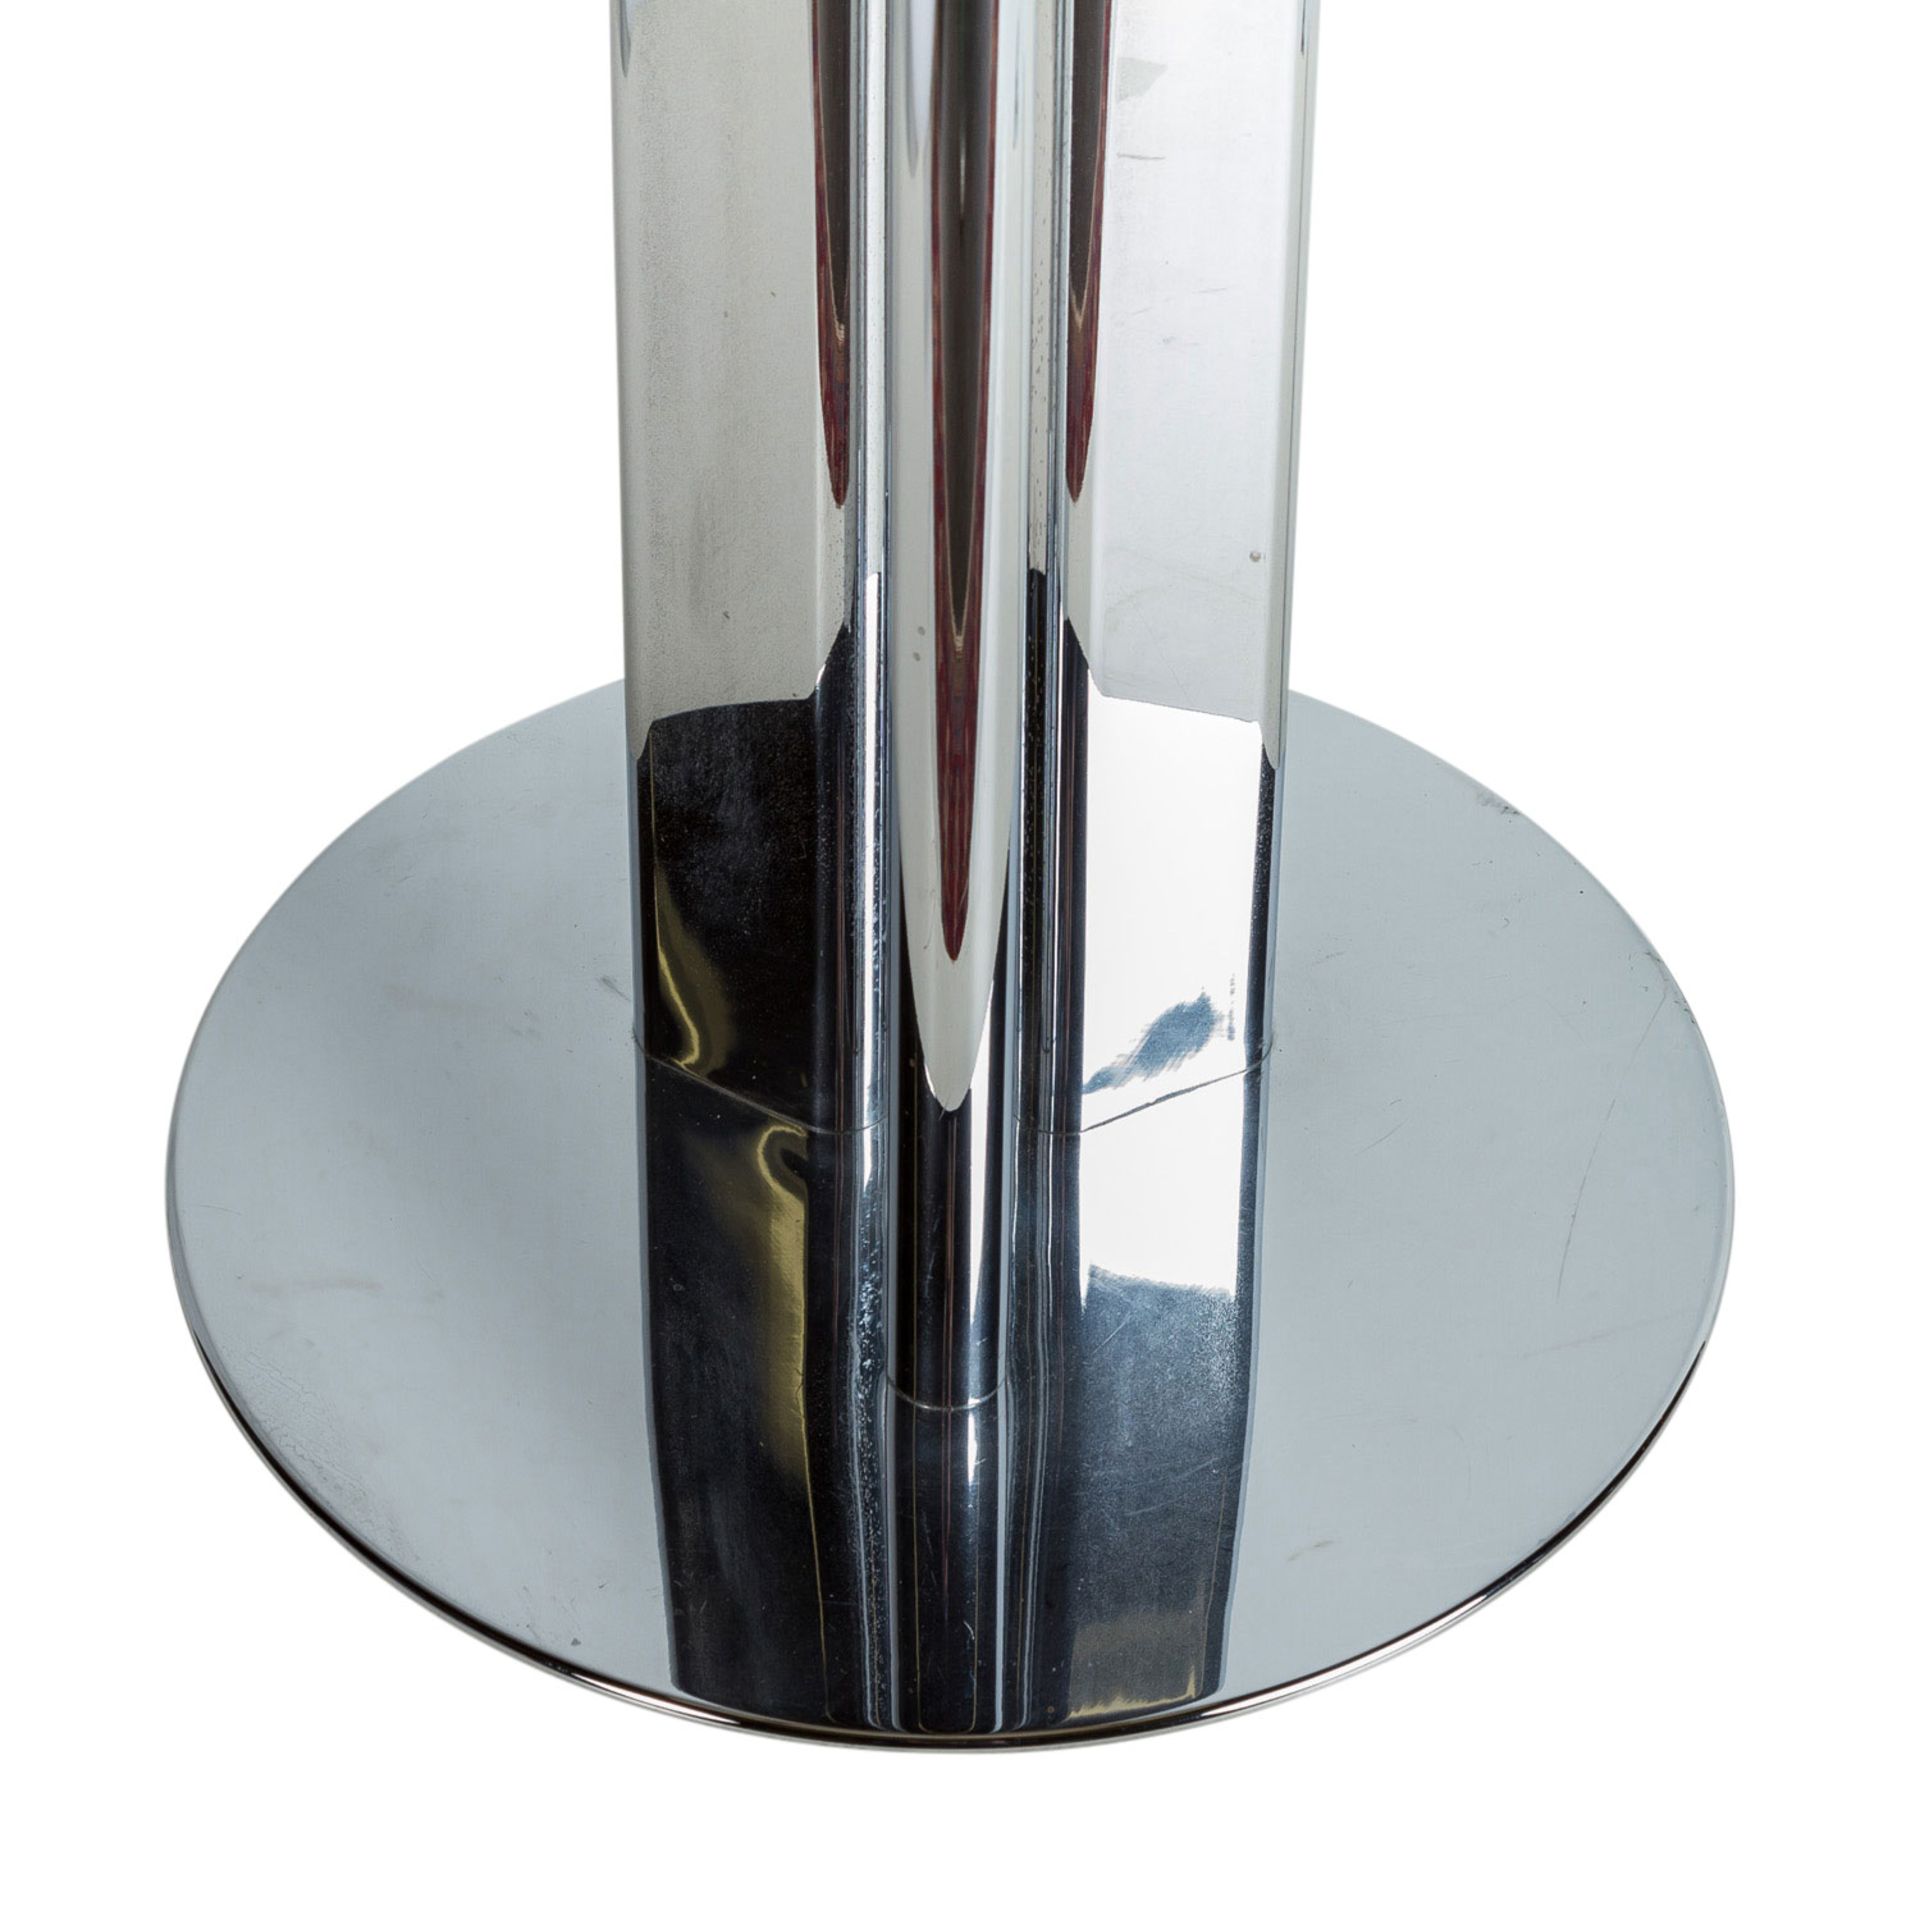 STEHLAMPE1970er Jahre, 3 angeordnete Metallstreben bilden den Schaft, verchromt, Lampe - Bild 3 aus 3